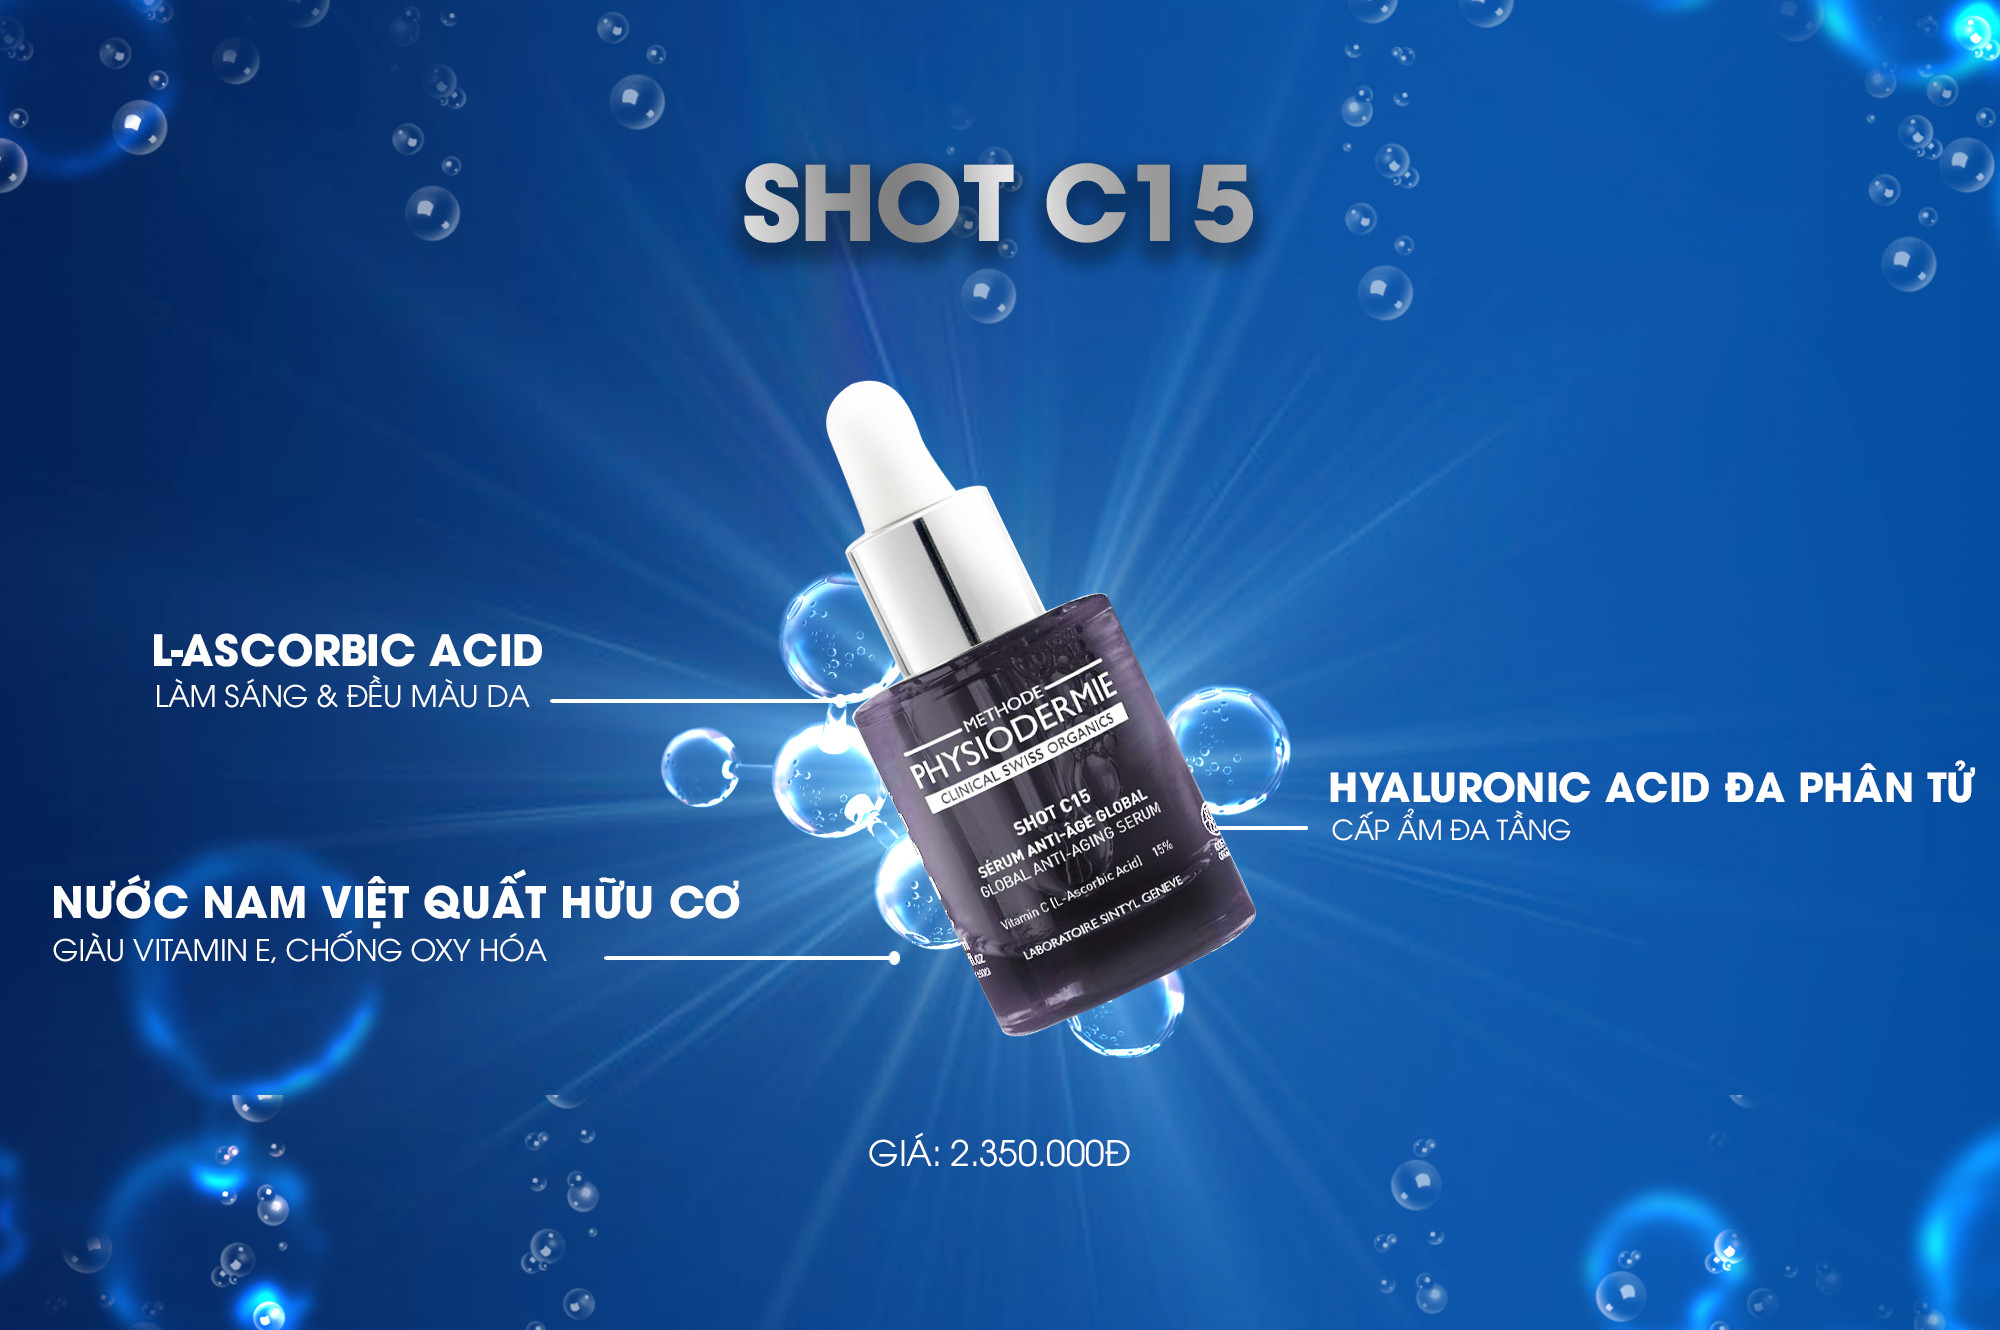 Shot C15 của Physiodermie với công thức mới, Vitamin C ổn định liều cao giảm được tình trạng oxy hóa